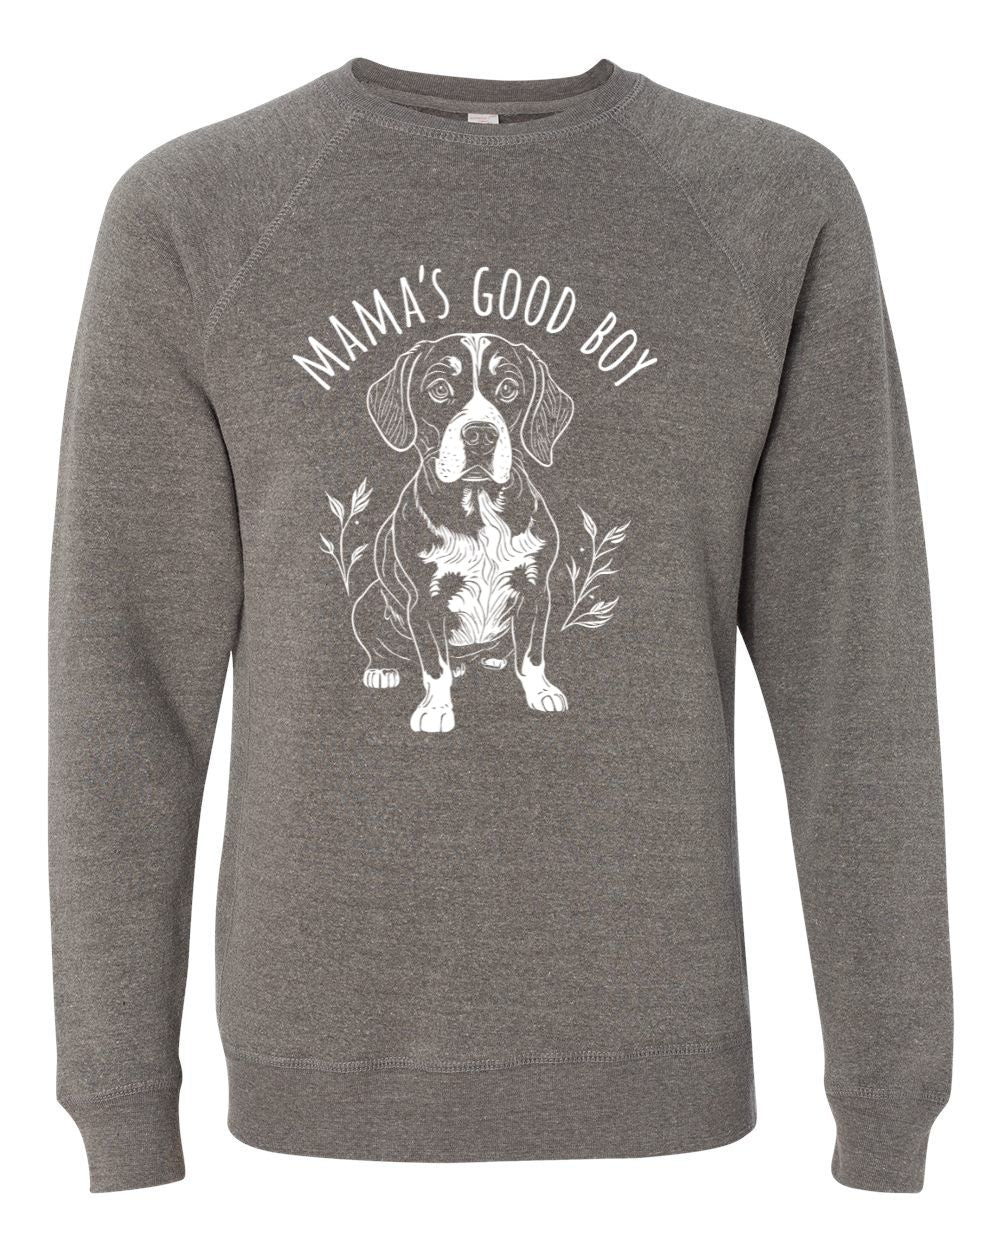 Mama's Good Boy Sweatshirt